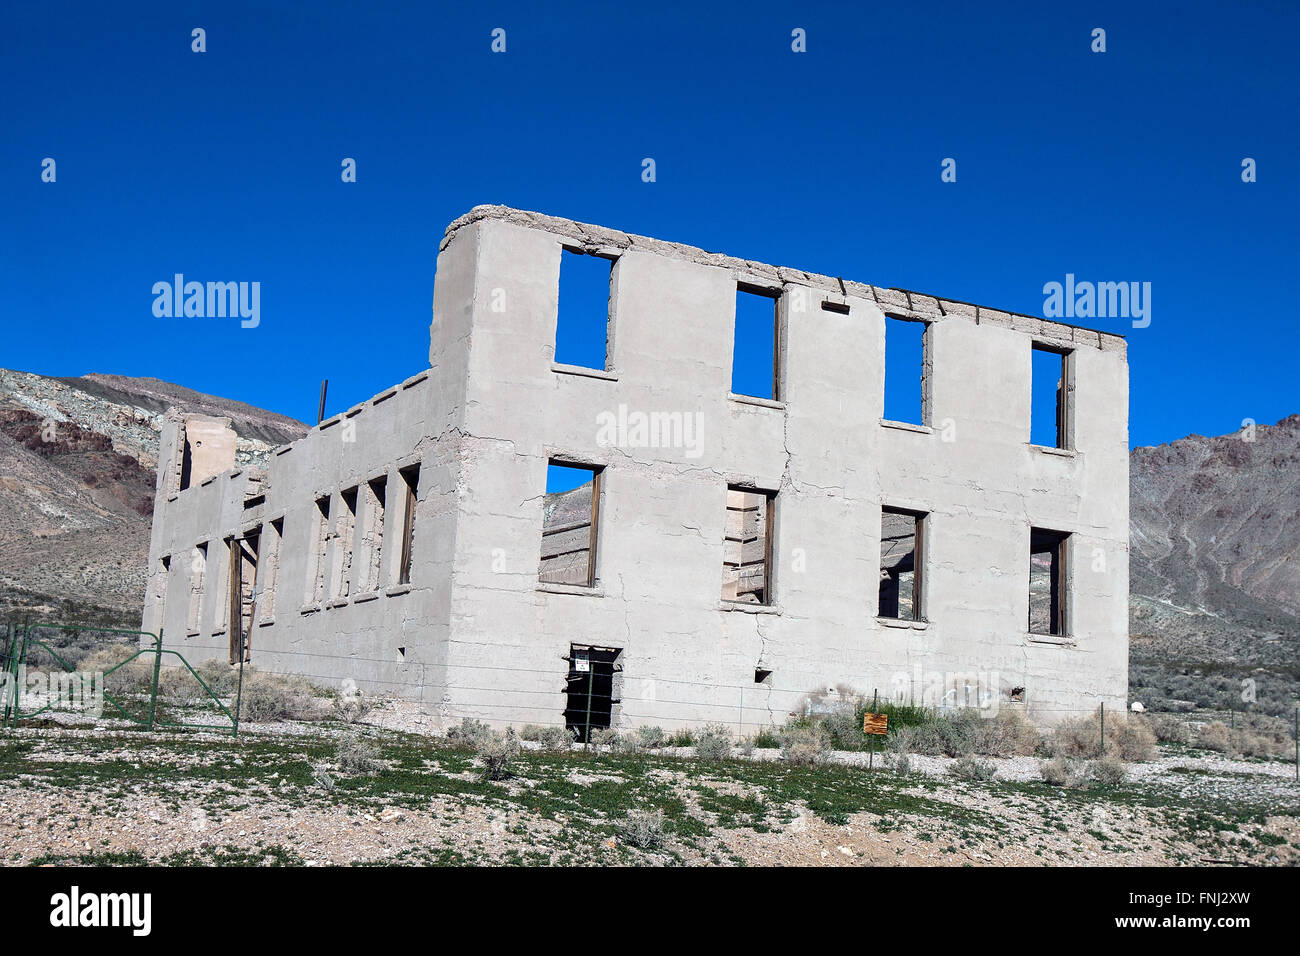 Bâtiment de l'école publique de rhyolite ruines, rhyolite, Nevada, United States of America Banque D'Images